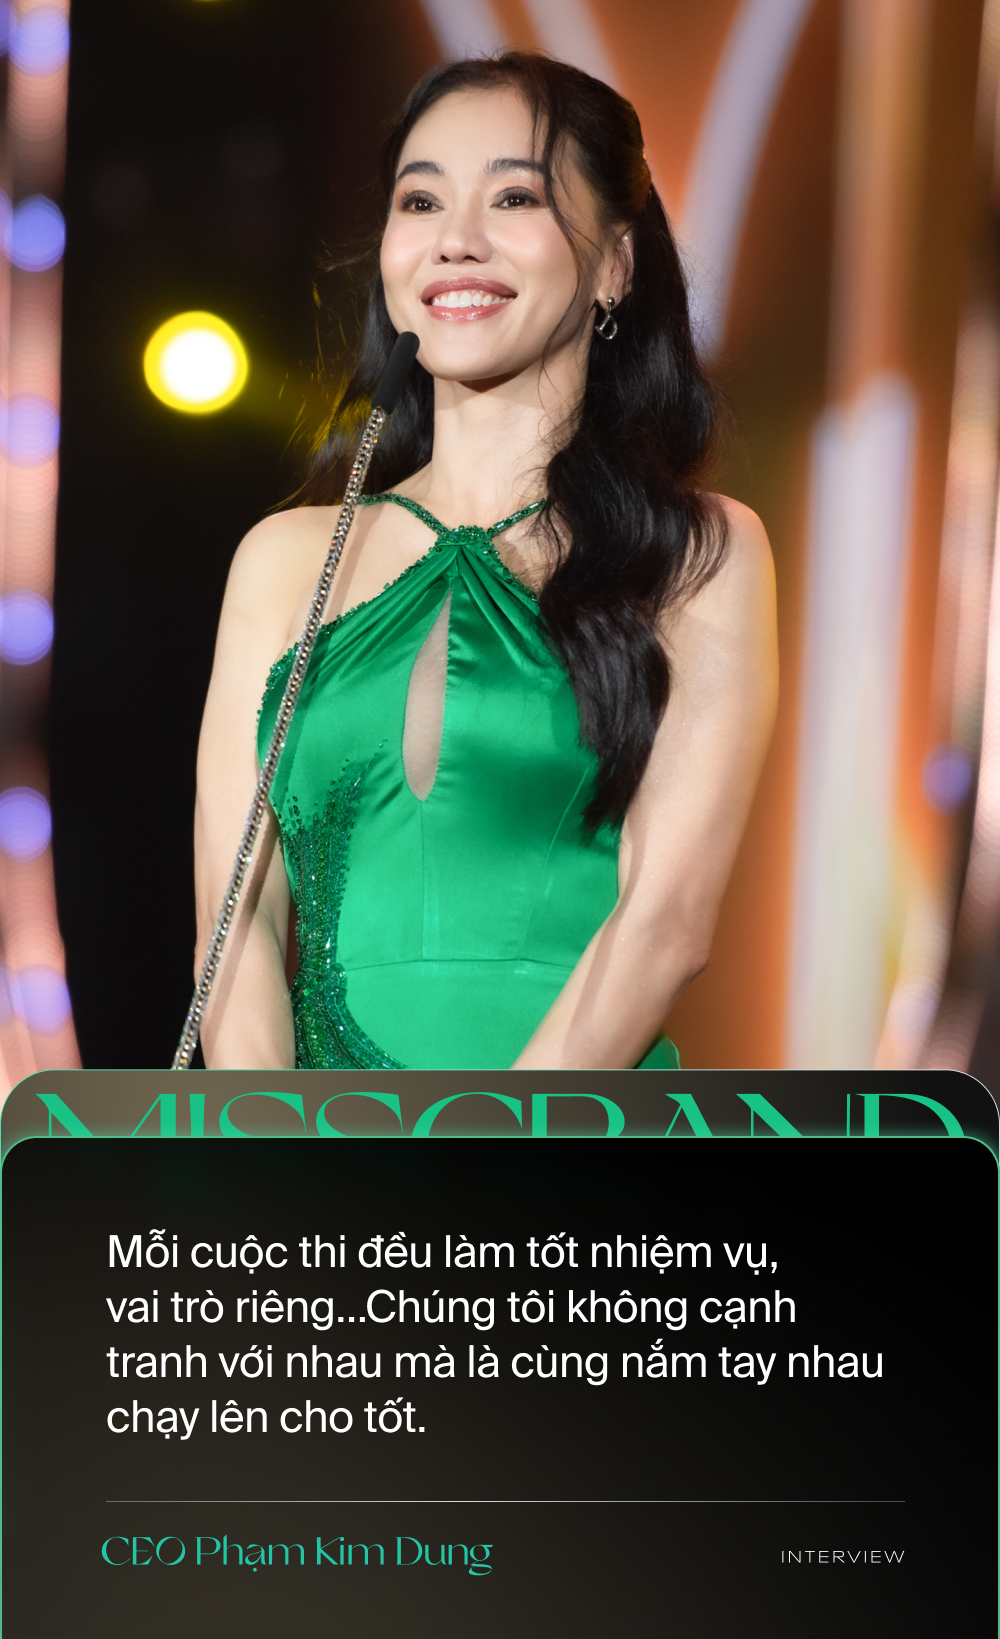 Trưởng BTC Miss Grand Vietnam: 